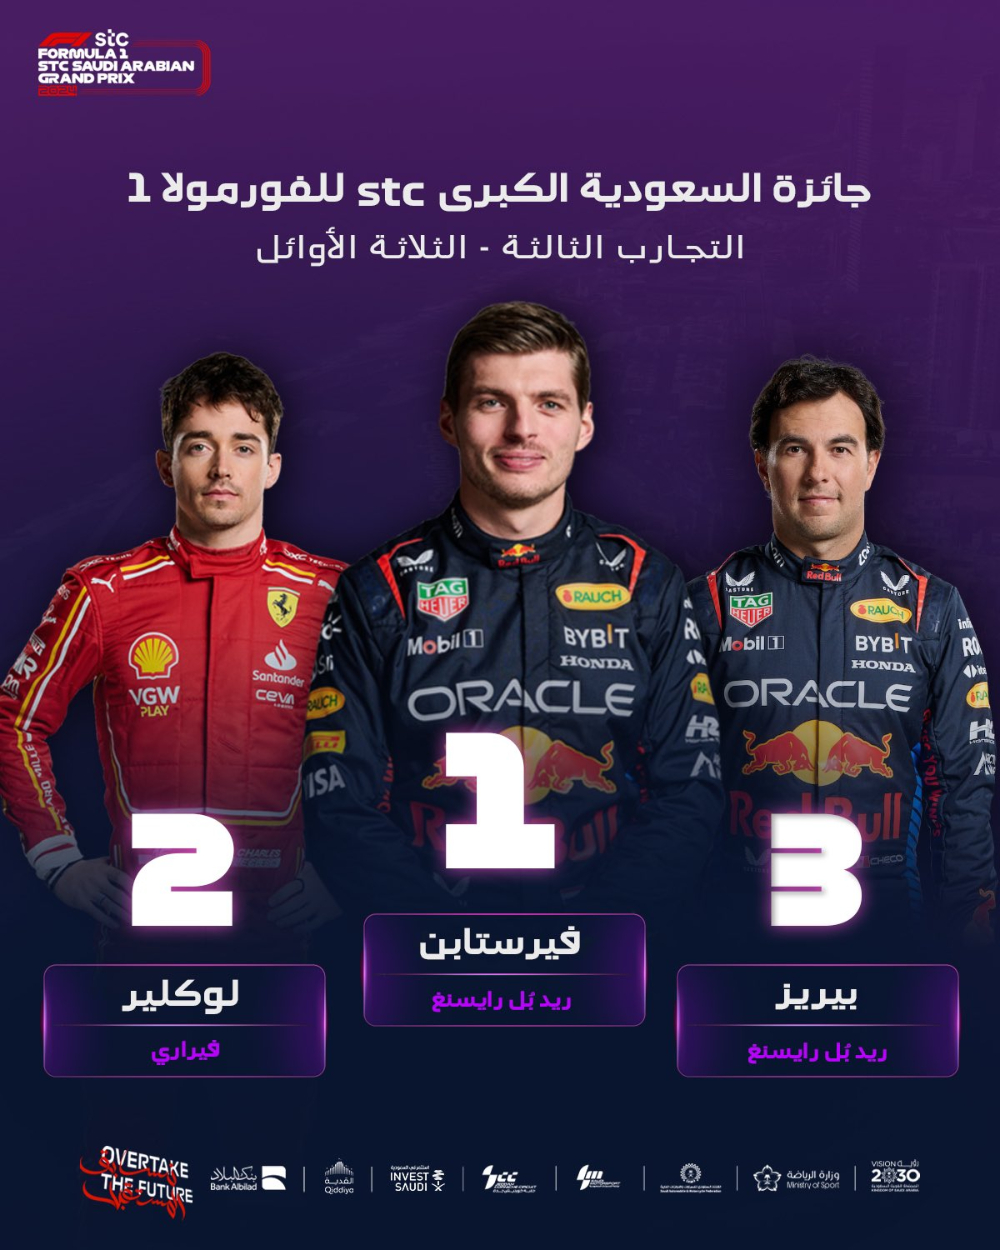 سباق جائزة السعودية الكبرى للفورمولا 1: اكتشف الفائز مع كافة التفاصيل 60